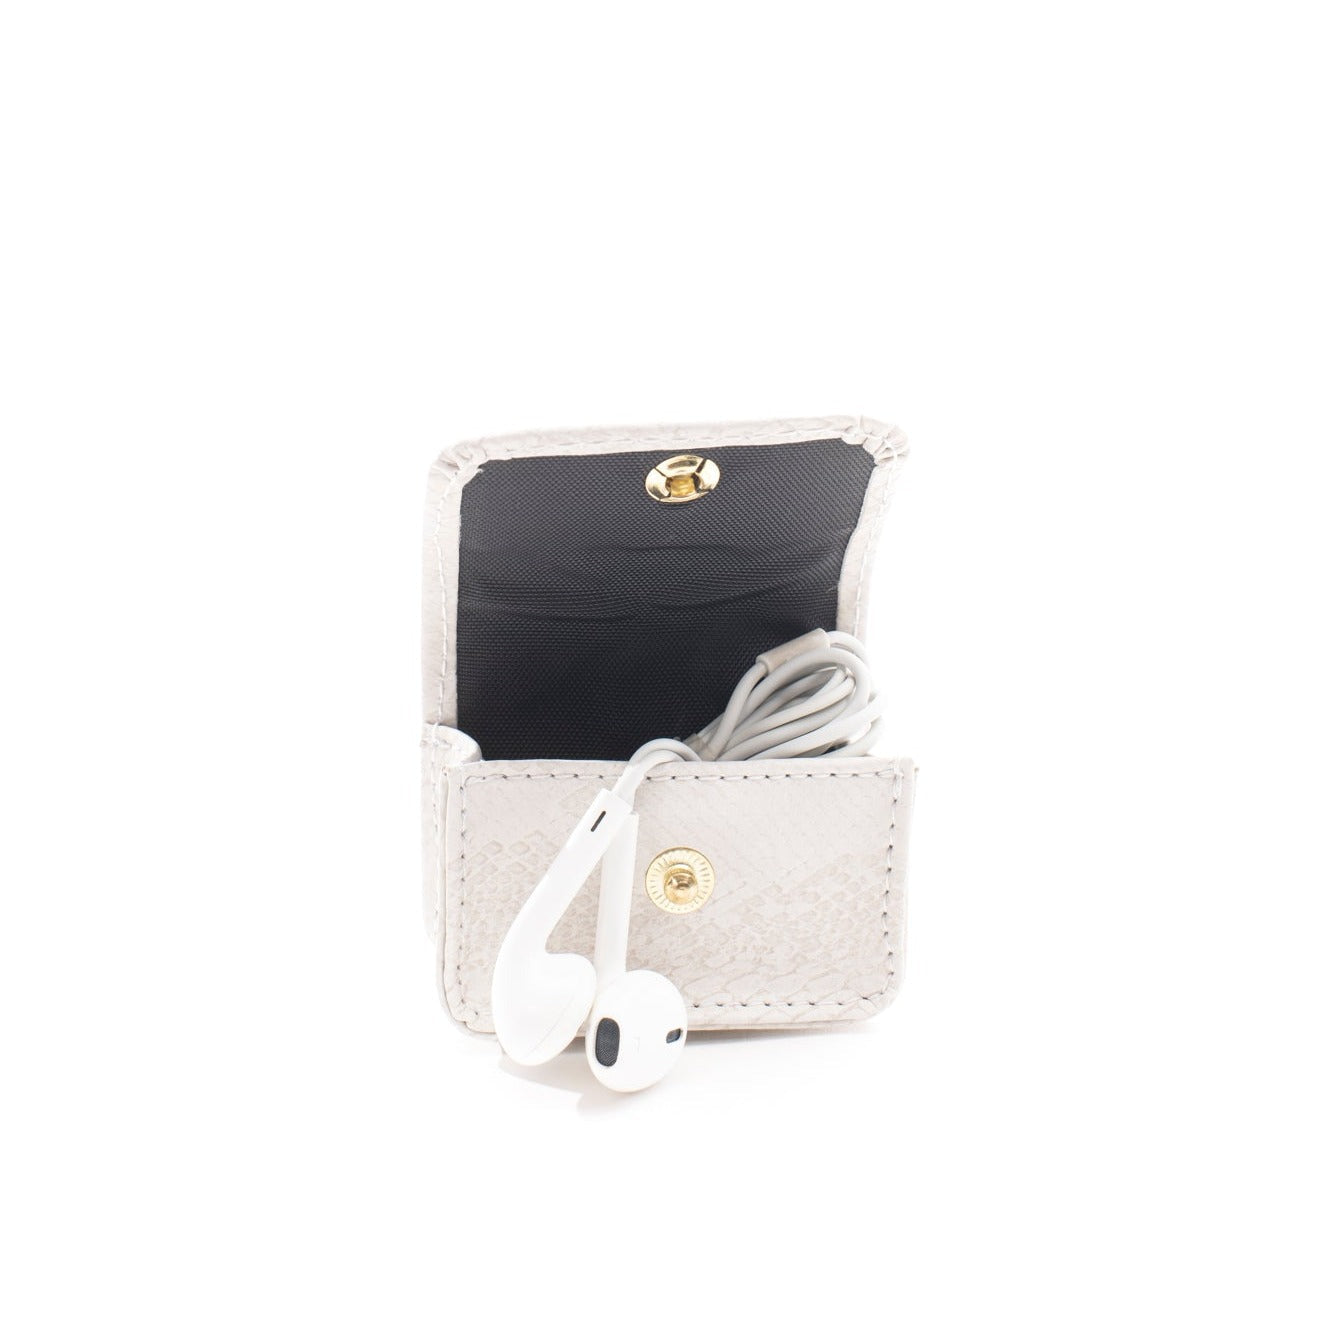 Earbud Pro Case - Ivory (white) Faux Snake - Gold Toned Hardware